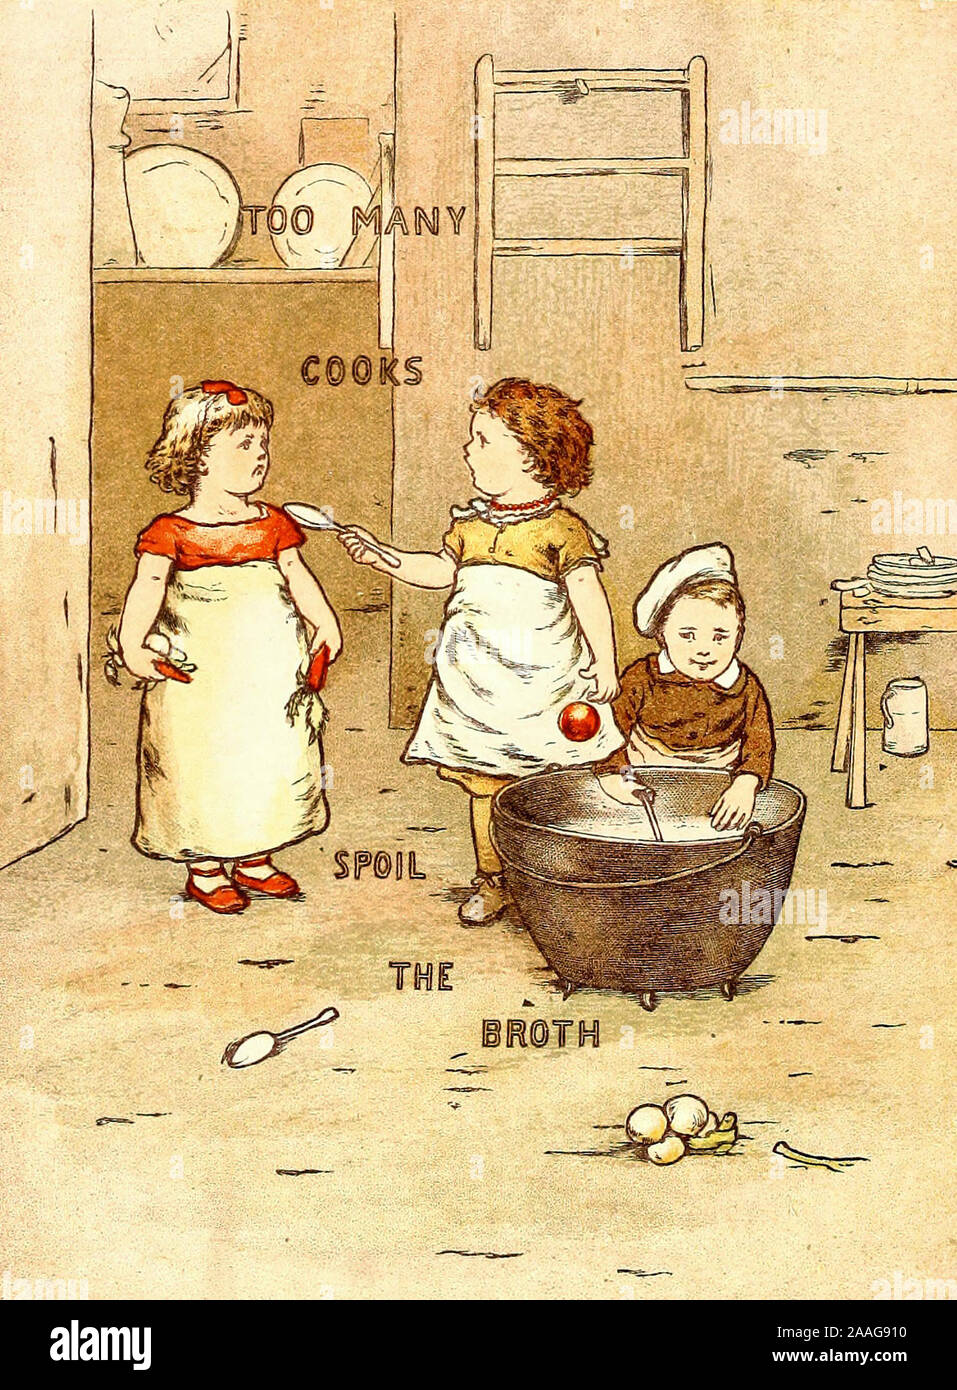 Trop de cuisiniers gâtent la sauce - Une illustration Vintage de un vieux proverbe. Banque D'Images